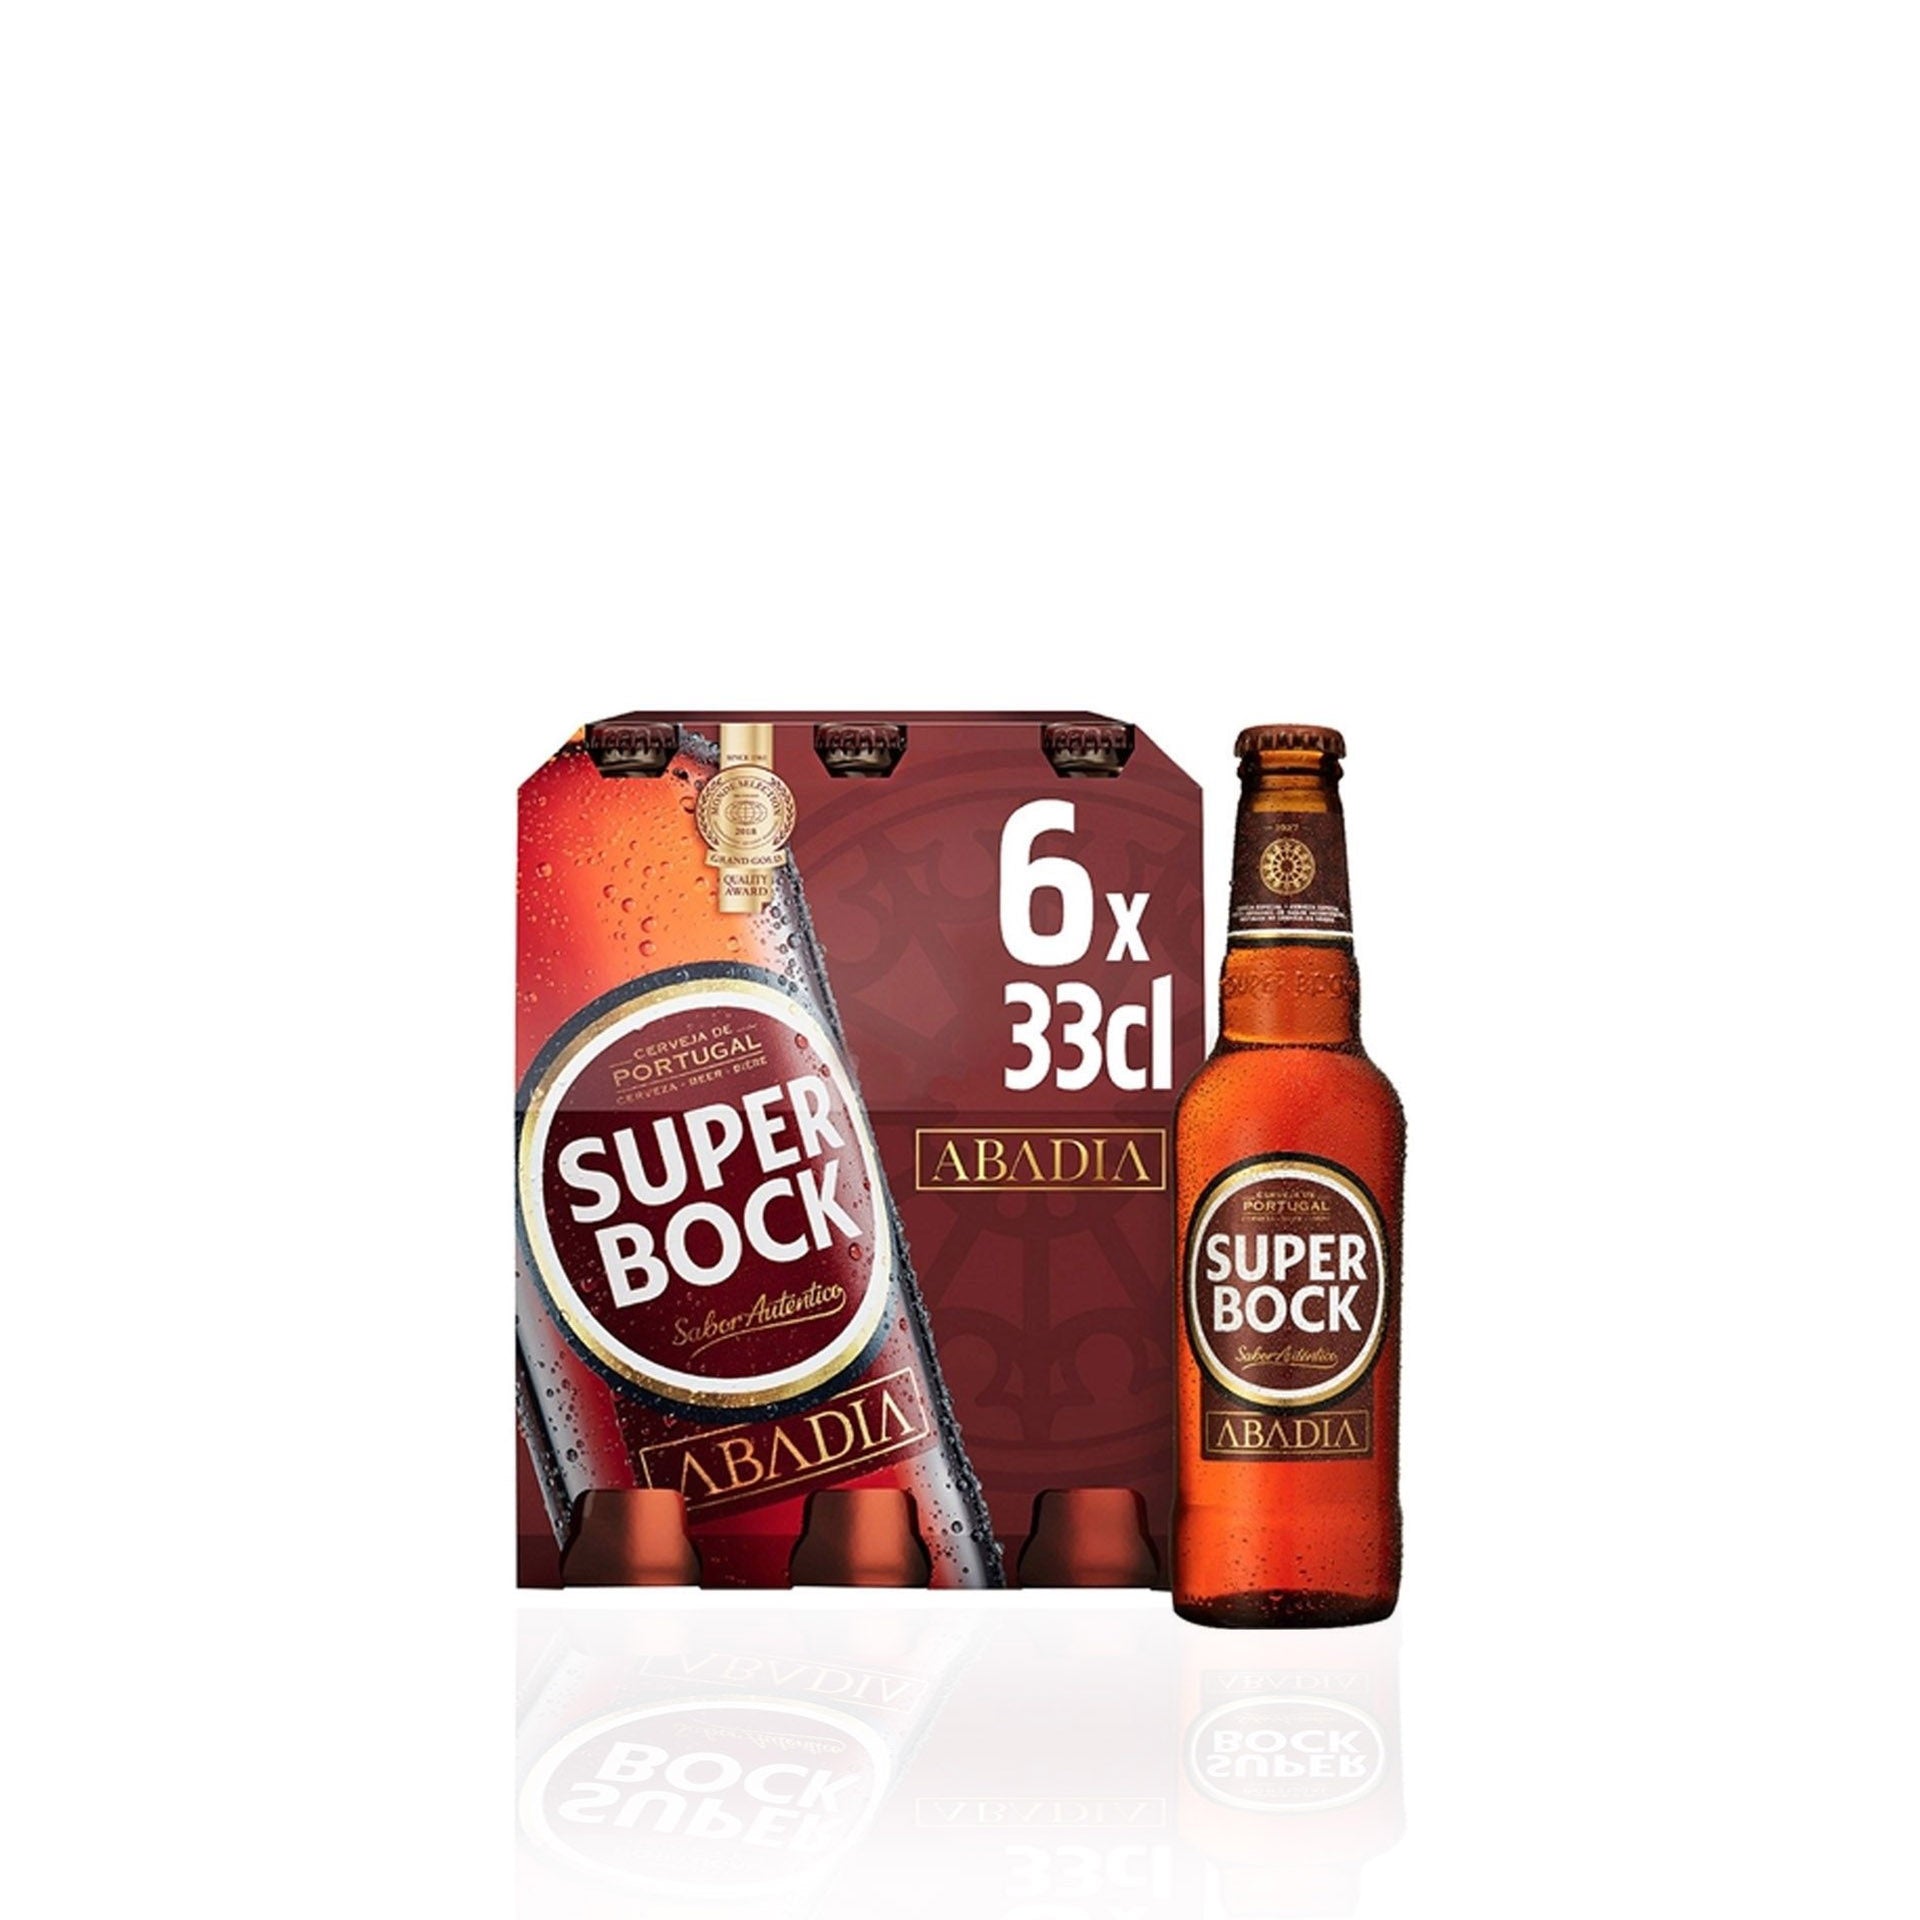 Super Bock Cerveja Abadia Garrafa TP 0,33 L - Pack 6 x 0,33 L